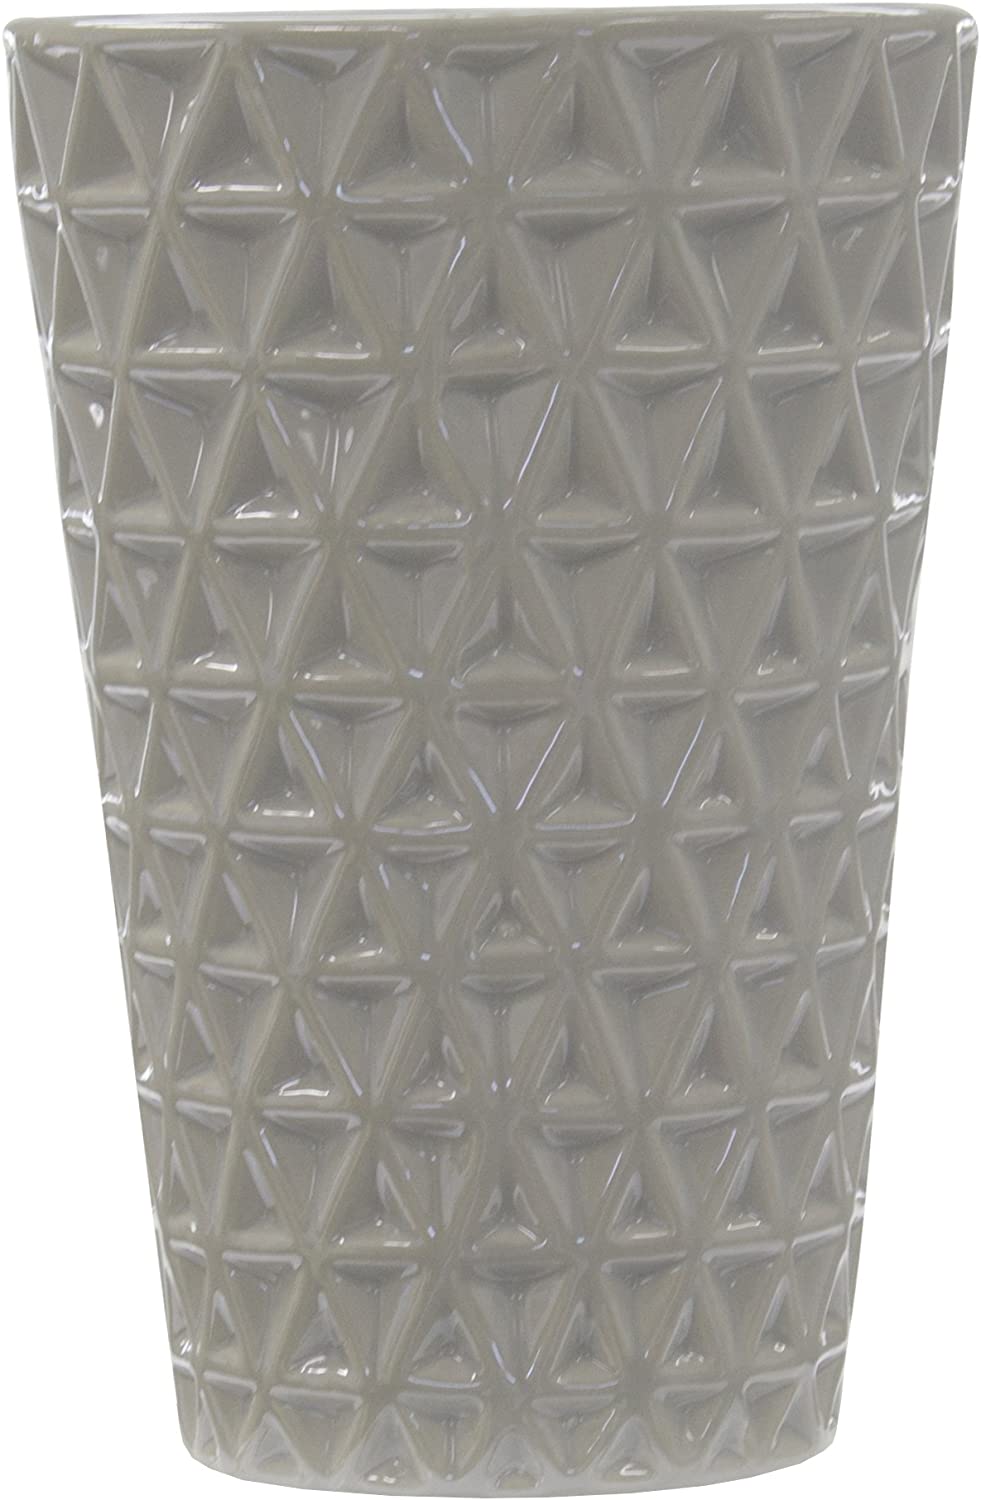 Ceramic design vase.